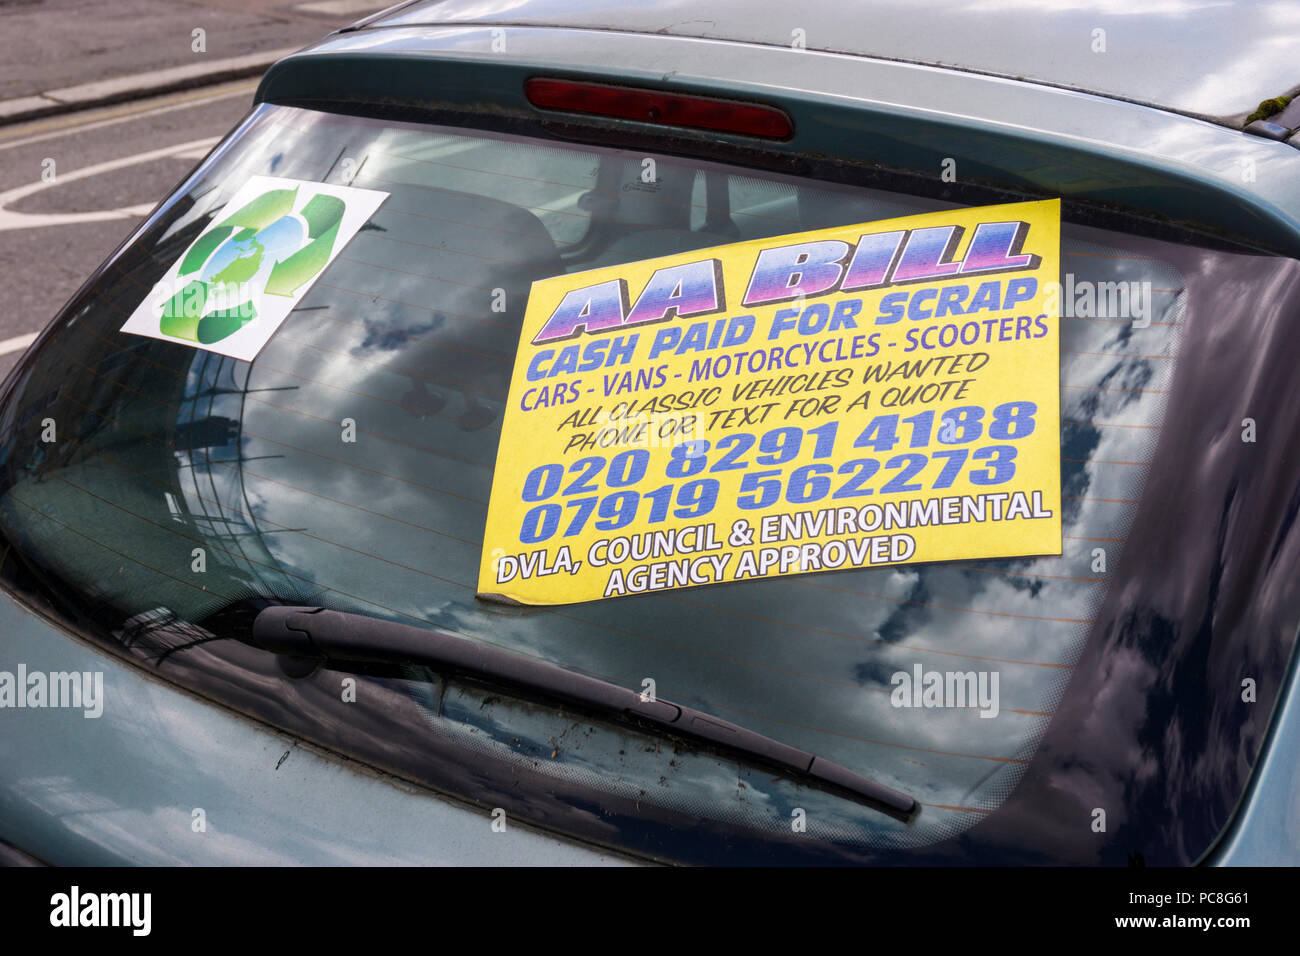 Un segno in una finestra di auto a sud di Londra offre la possibilità di pagare in contanti per la rottamazione delle auto, furgoni, motocicli e scooter. Foto Stock